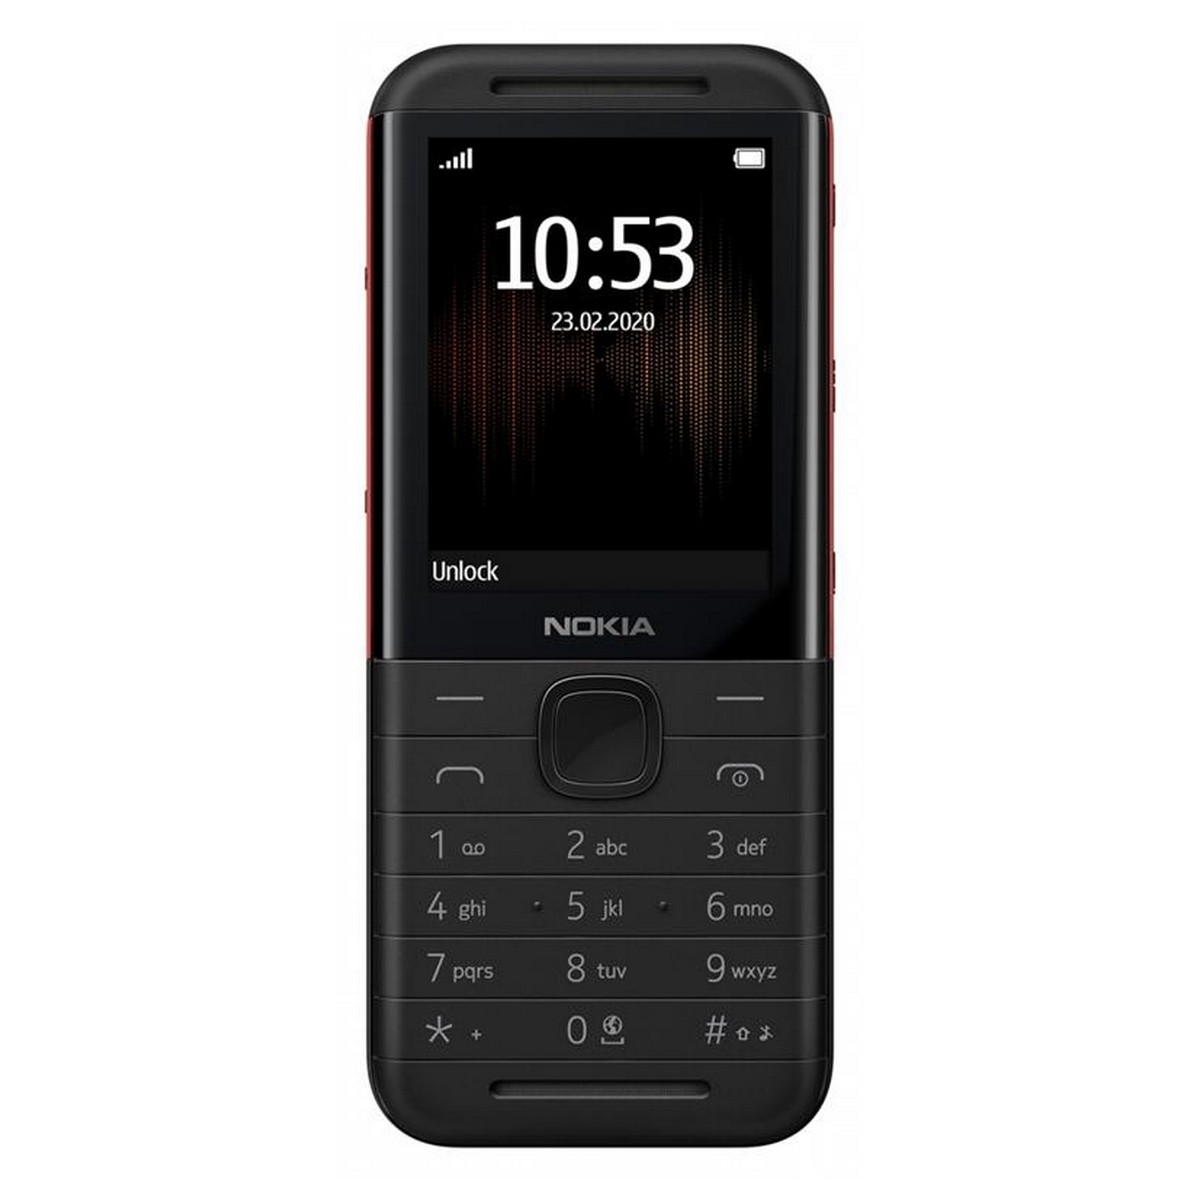 Мобильный телефон Nokia 5310 Dual Sim Black/Red